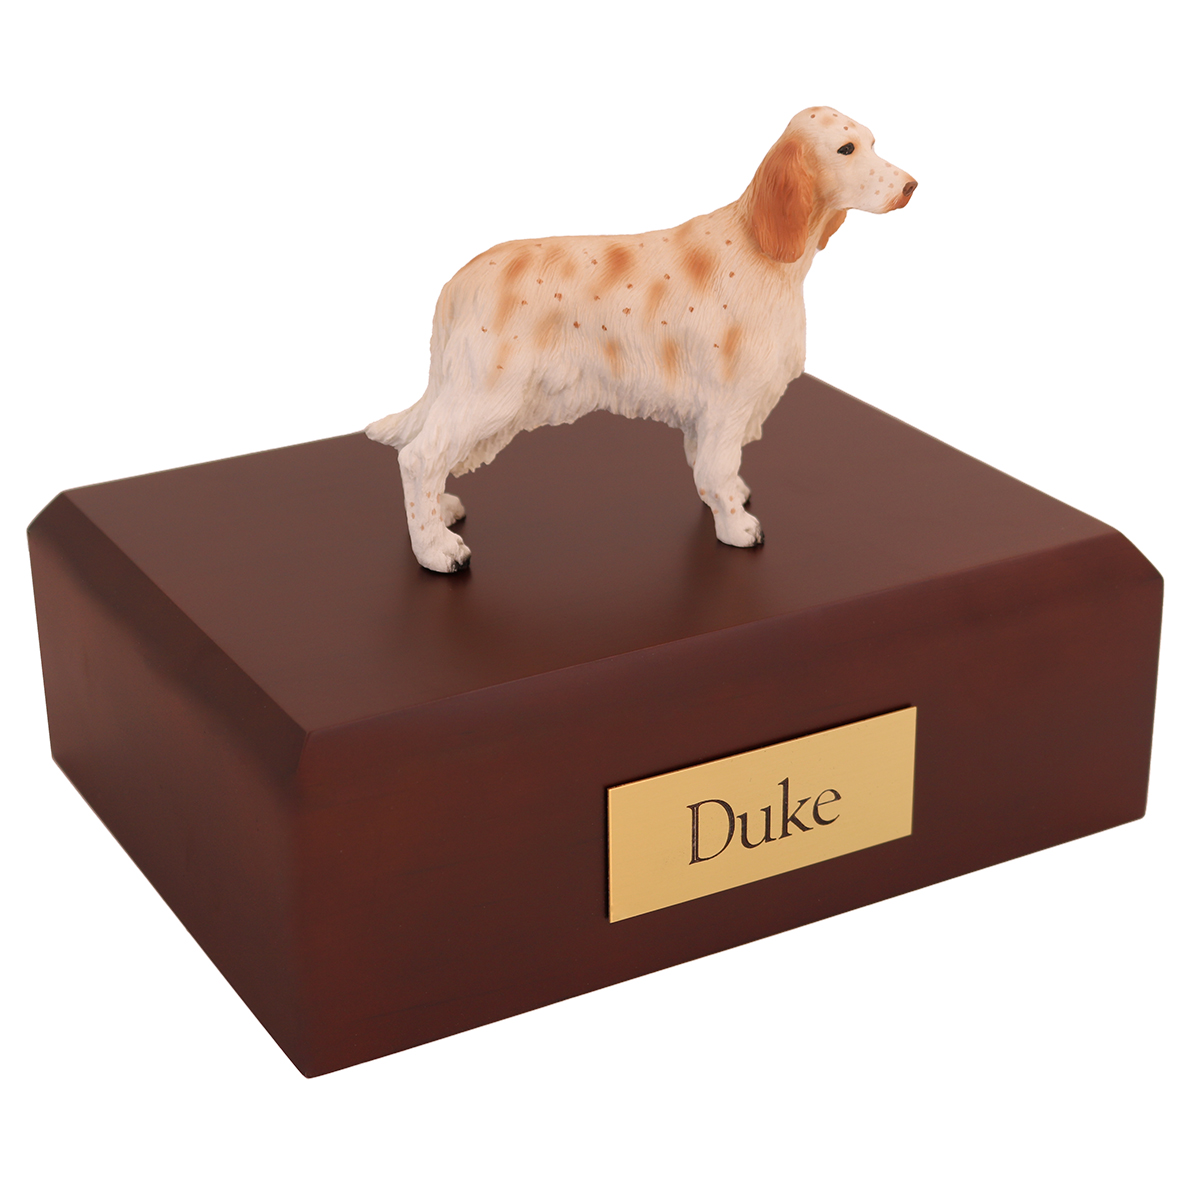 Dog, English Setter, Orange Belton - Figurine Urn